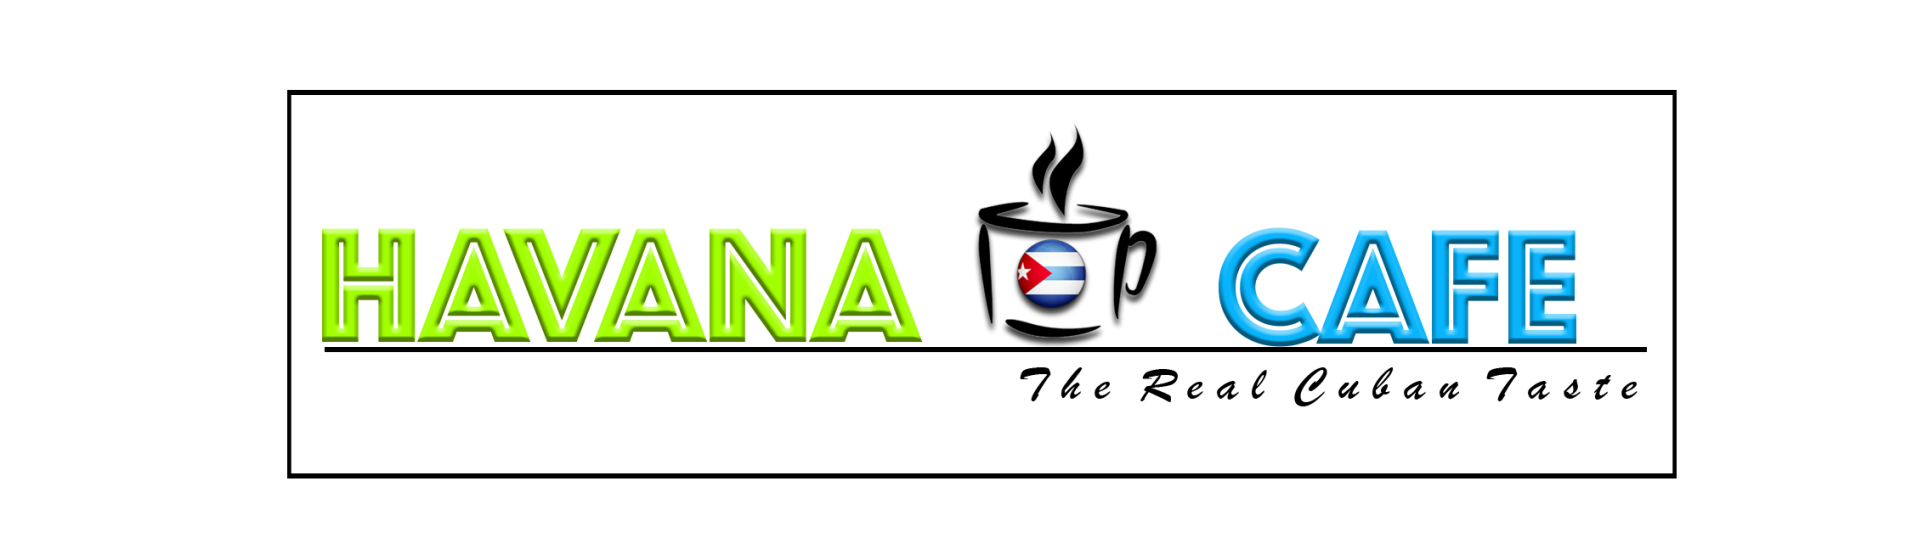  HAVANA CAFE Home